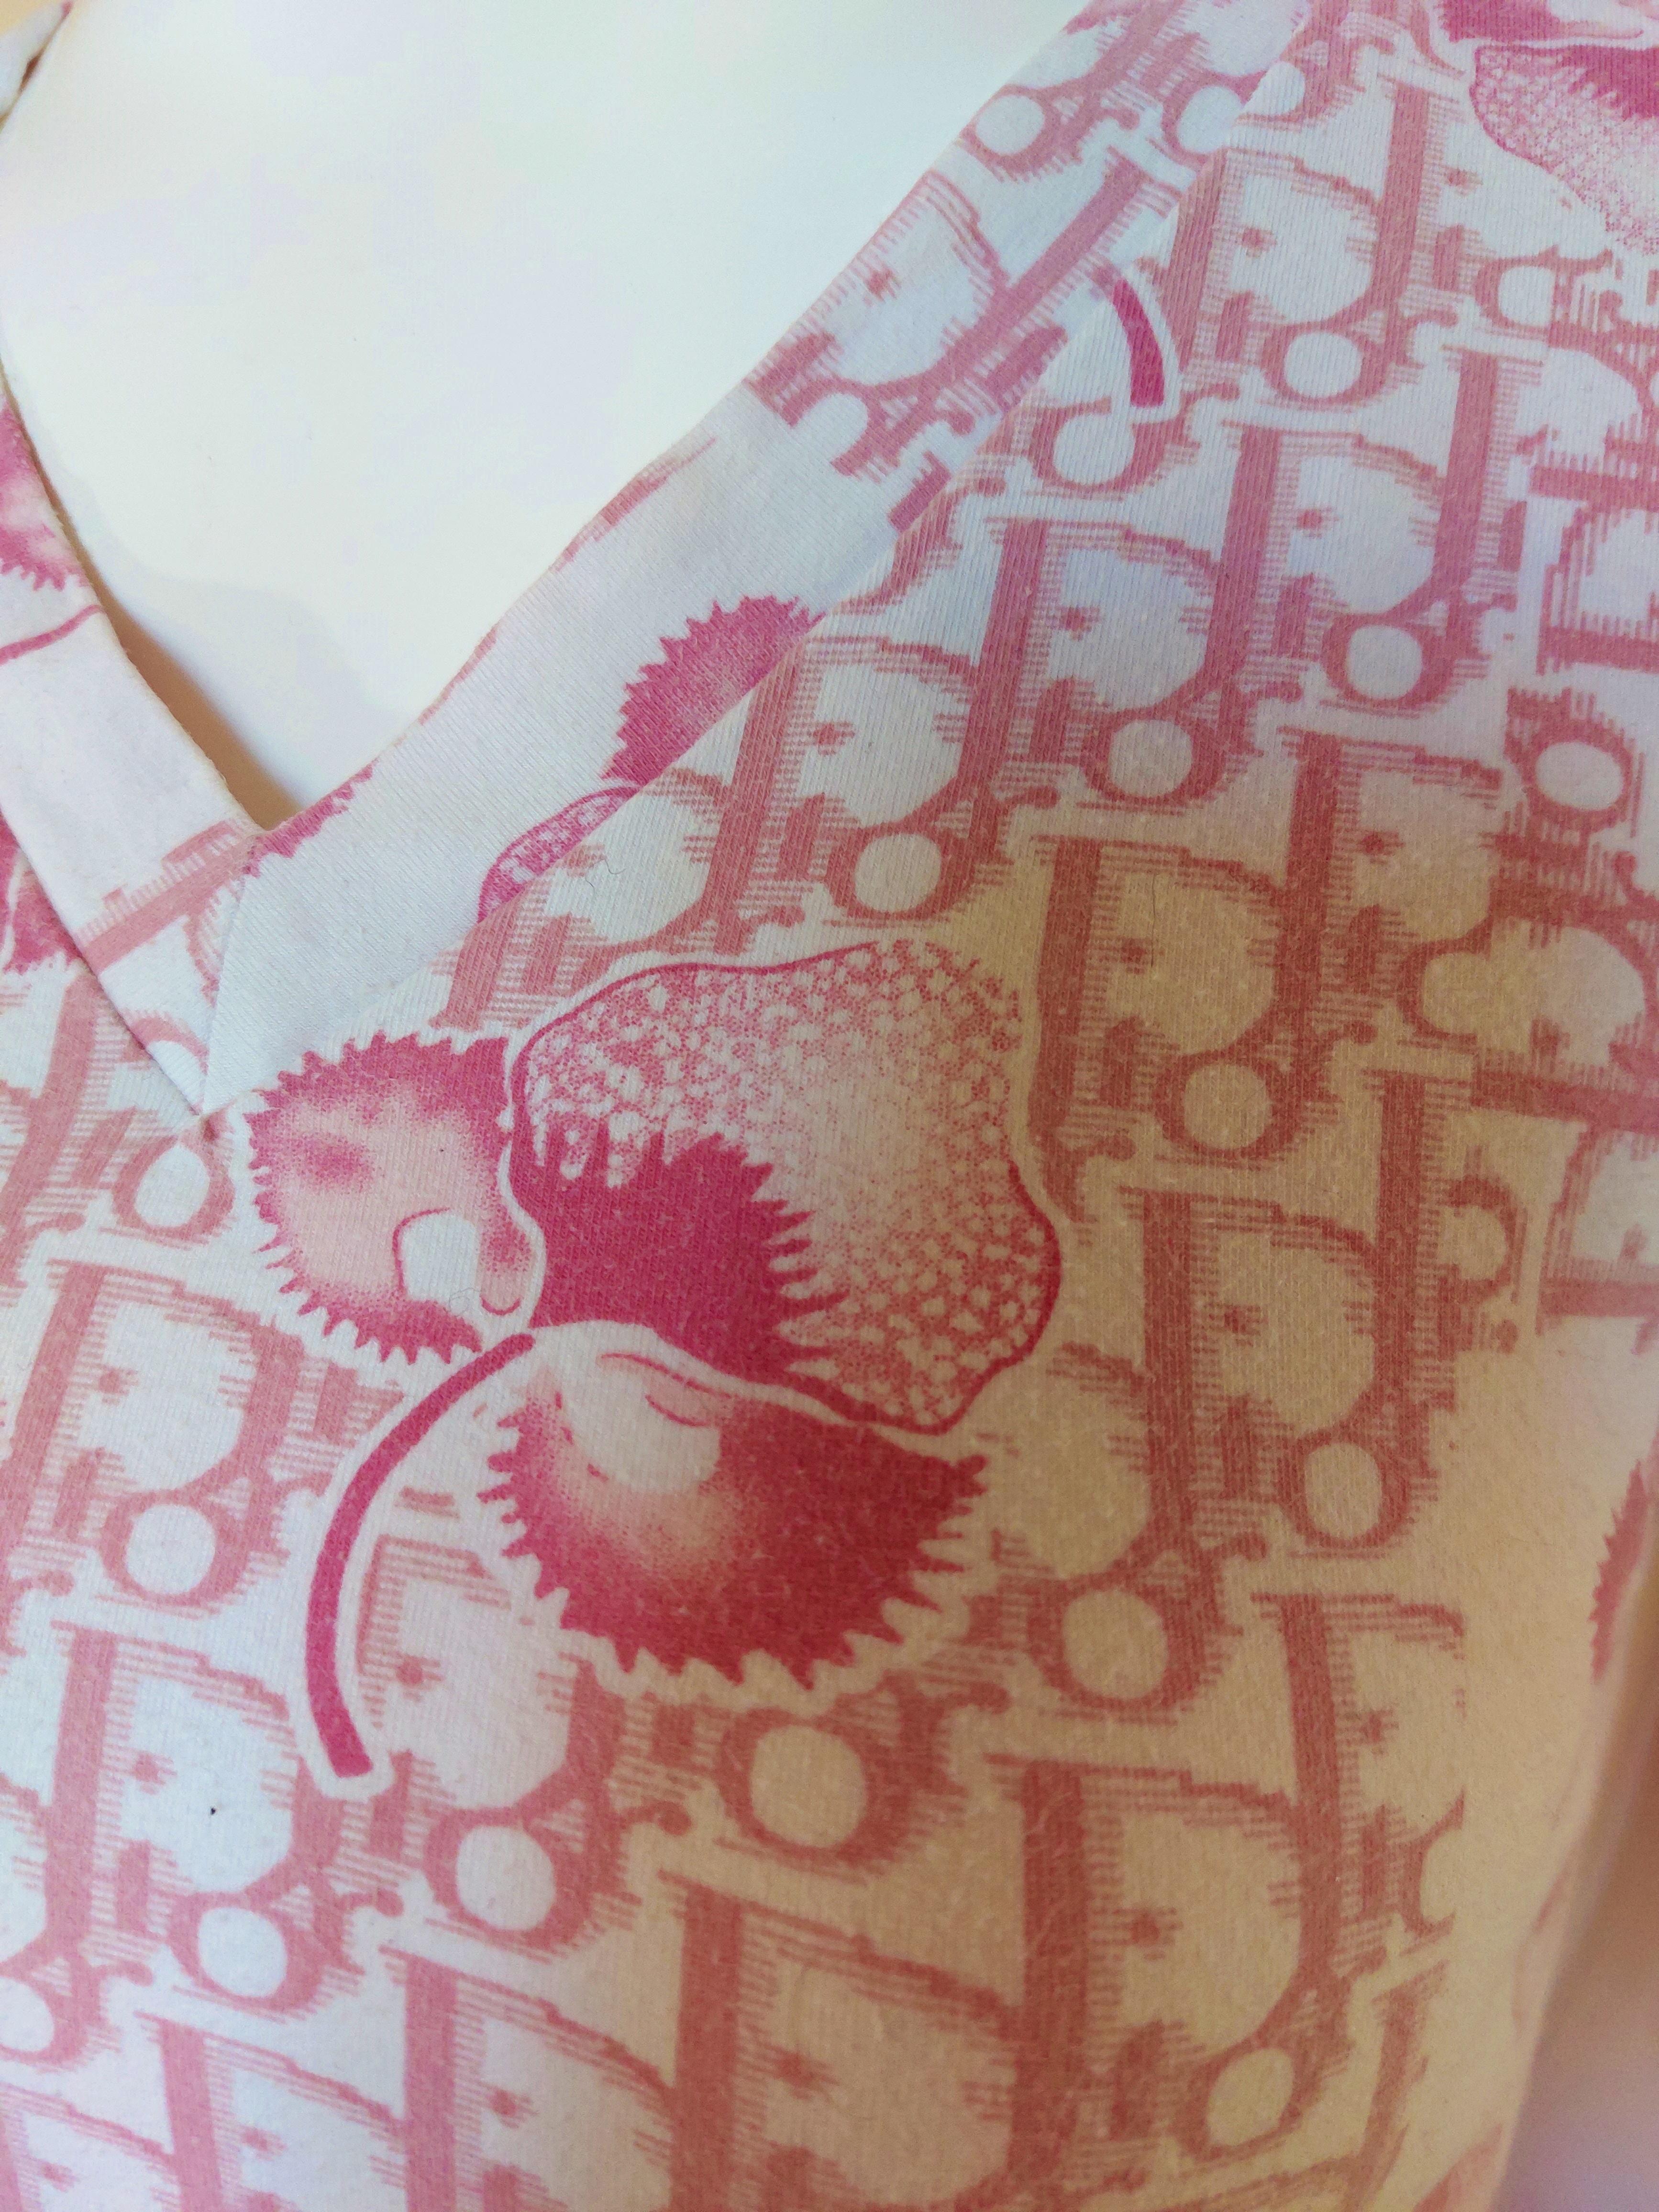 Christian Dior J’adore Cherry Blossom Monogram Floral Logo Pink Top Shirt 5